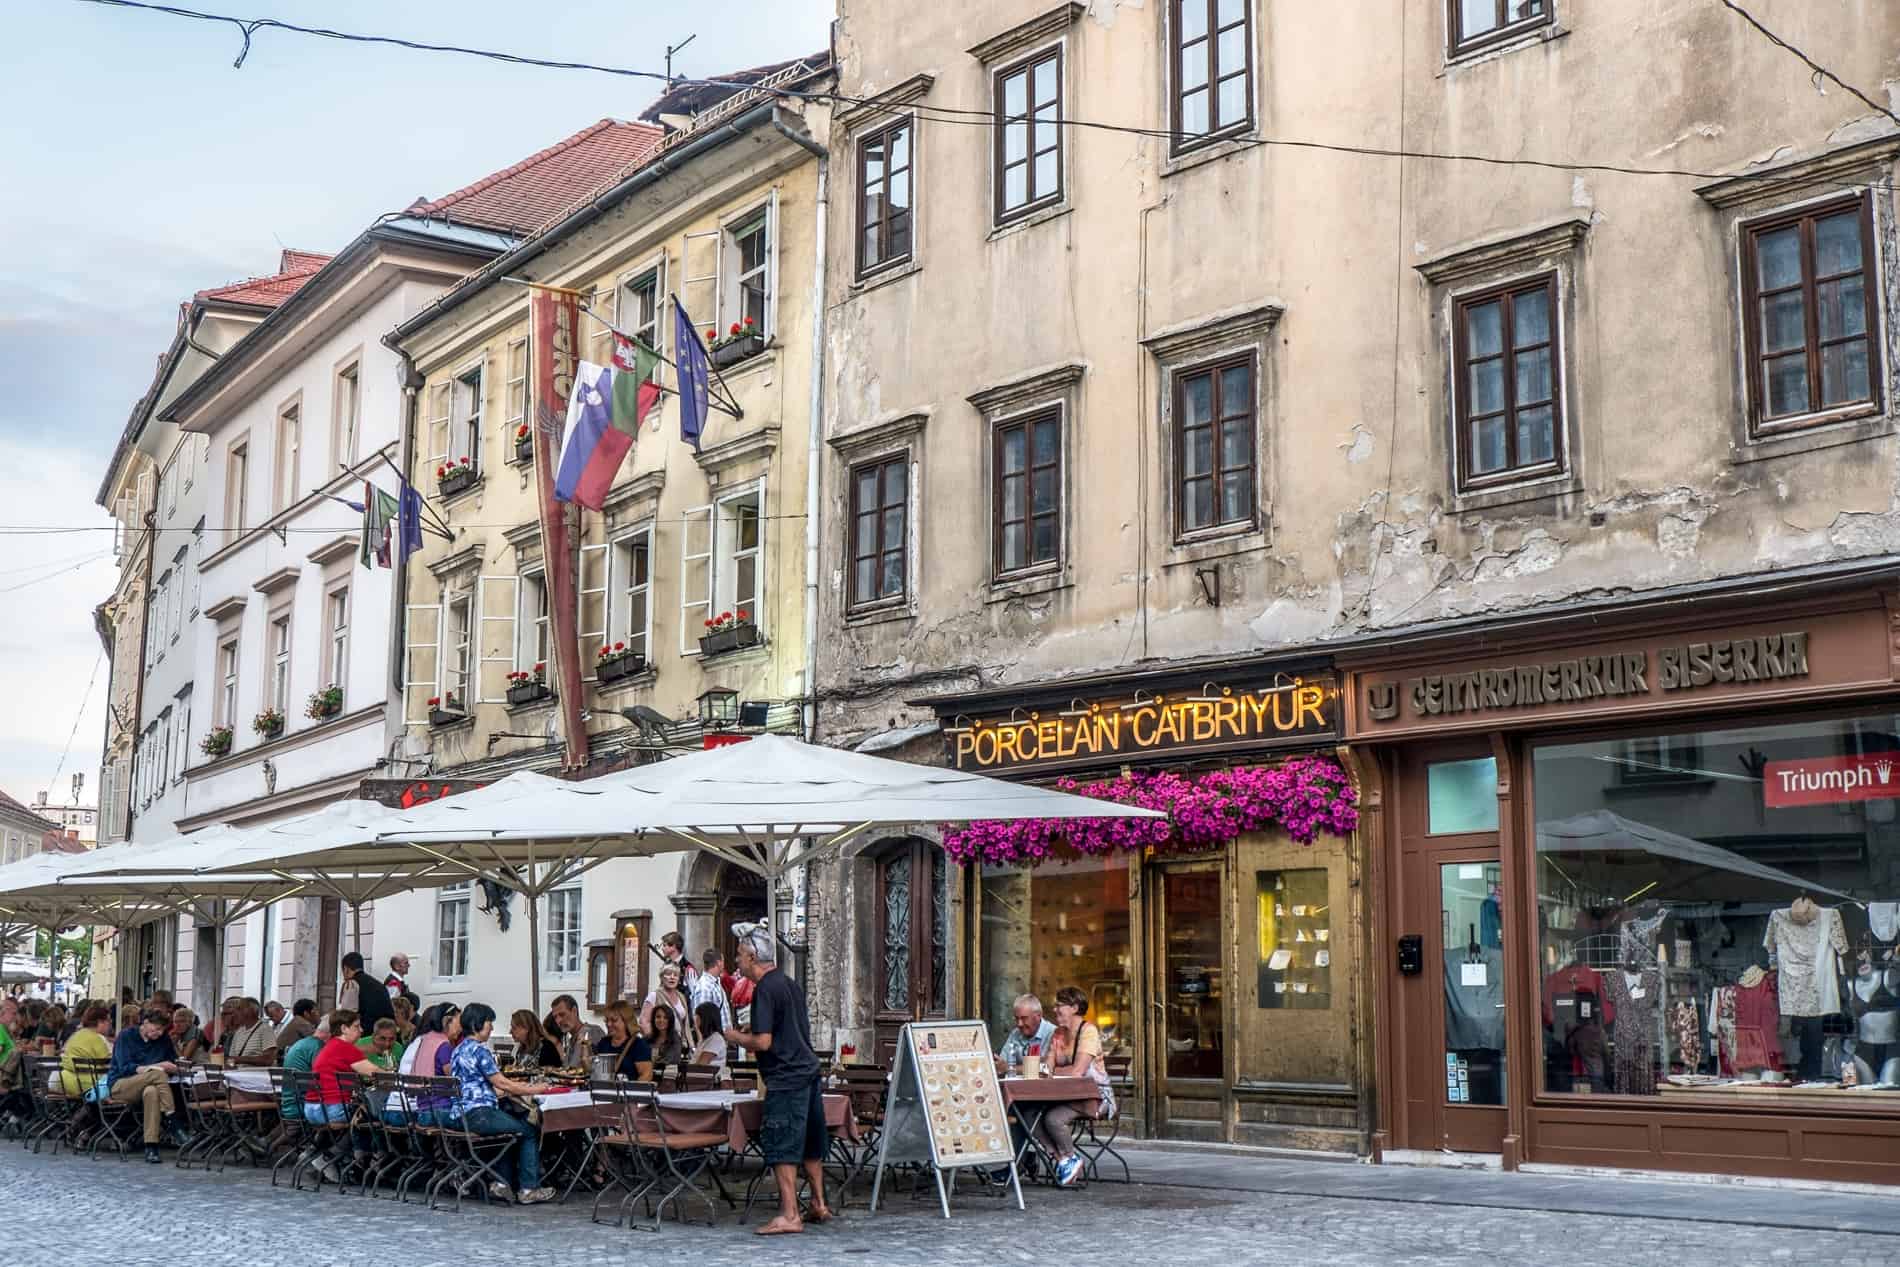 Al freso dining in Ljubljana Old Town, Slovenia.